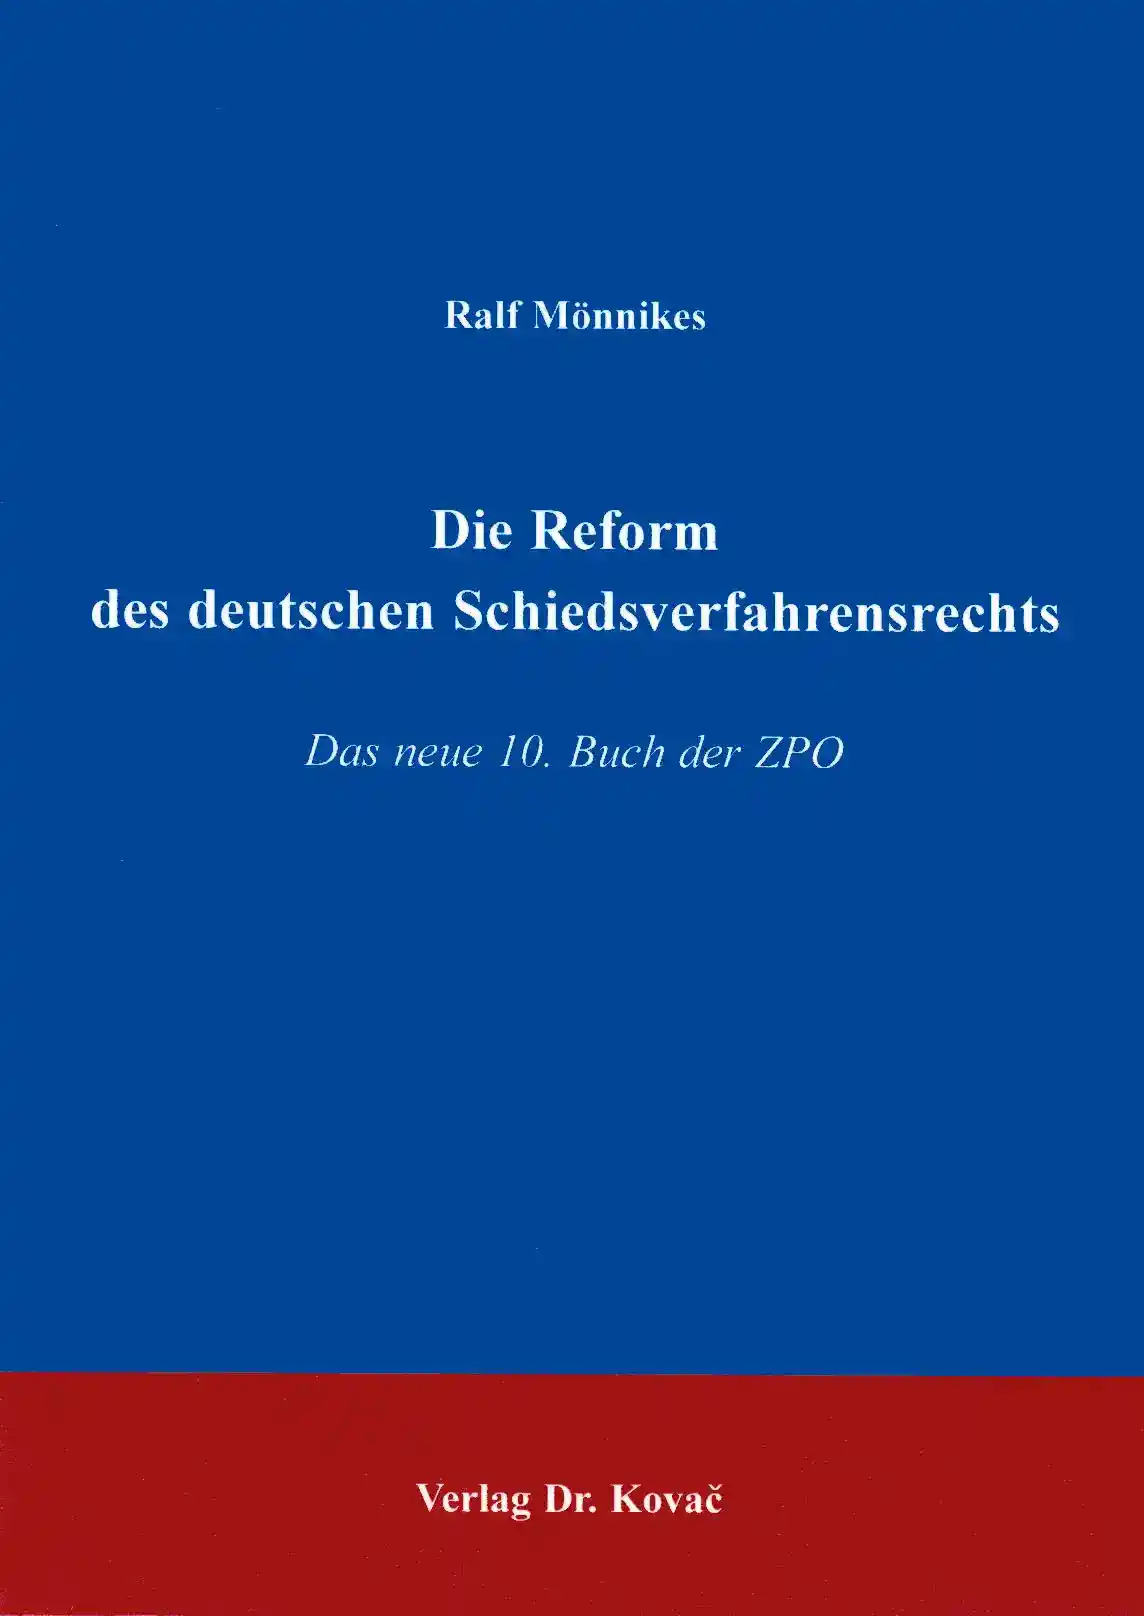 Die Reform des deutschen Schiedsverfahrensrechts (Doktorarbeit)